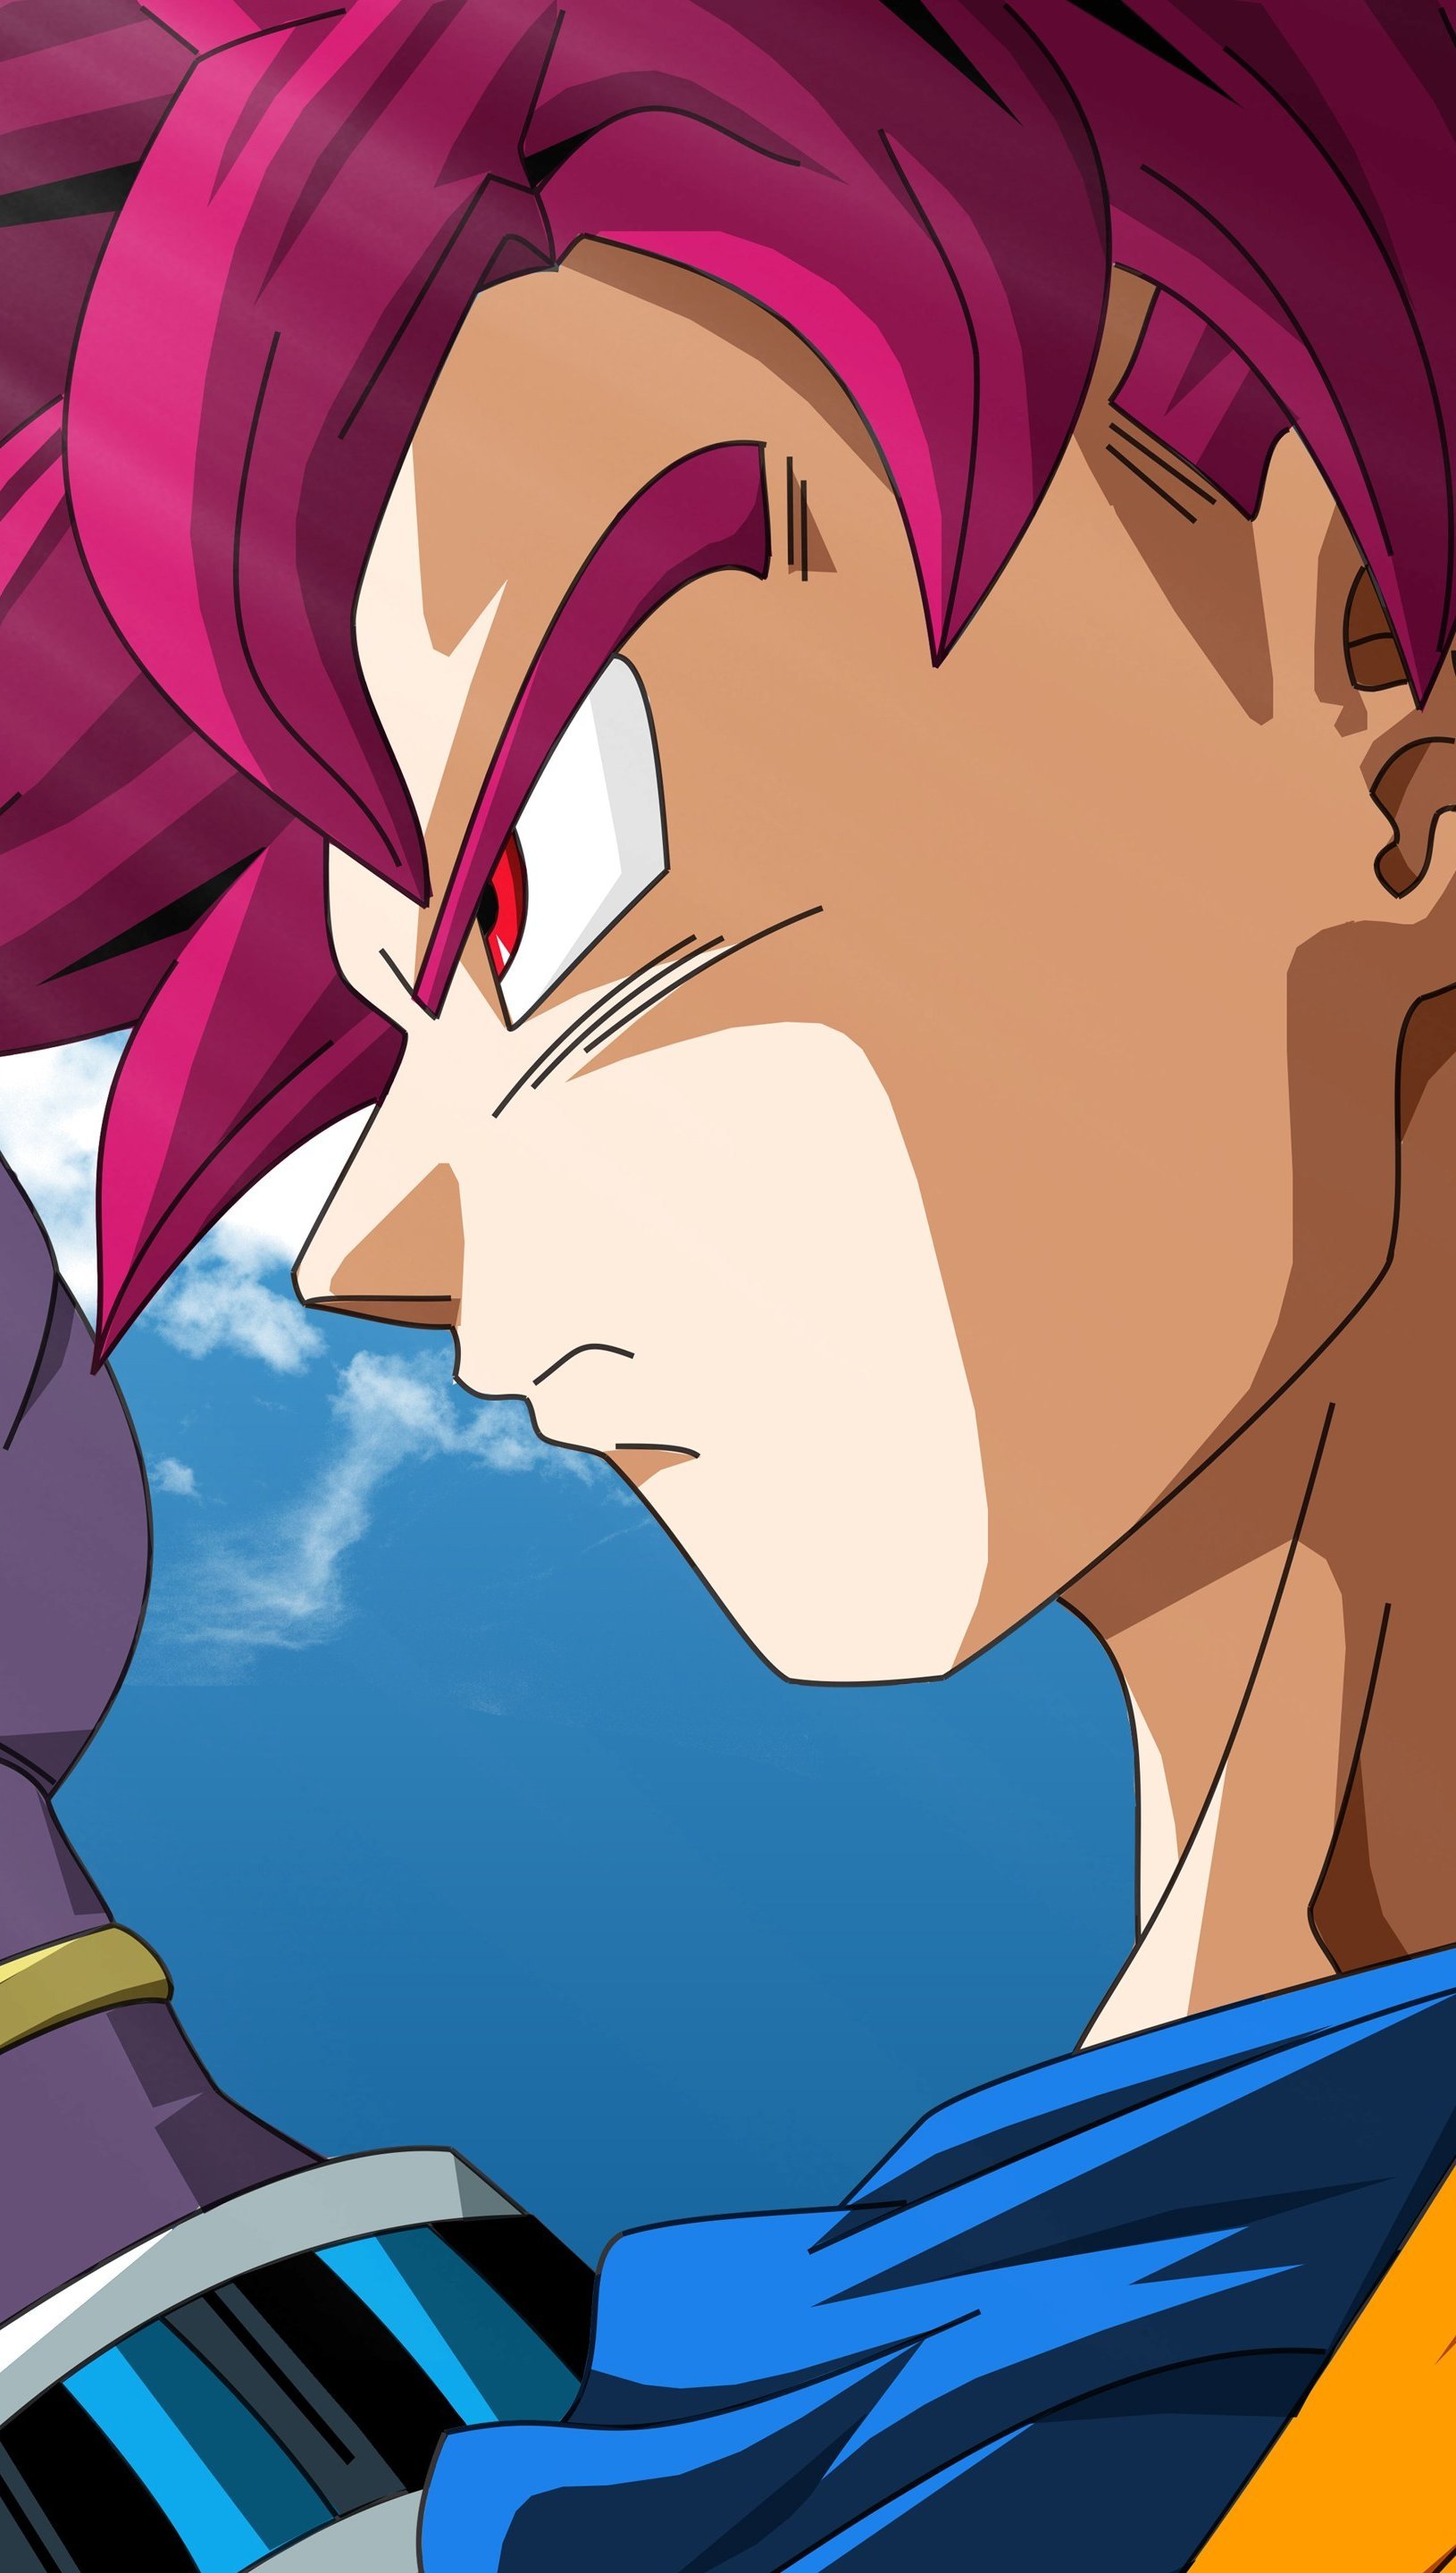 Beerus and Goku Super Saiyan God Anime Wallpaper 5k Ultra HD ID:3046